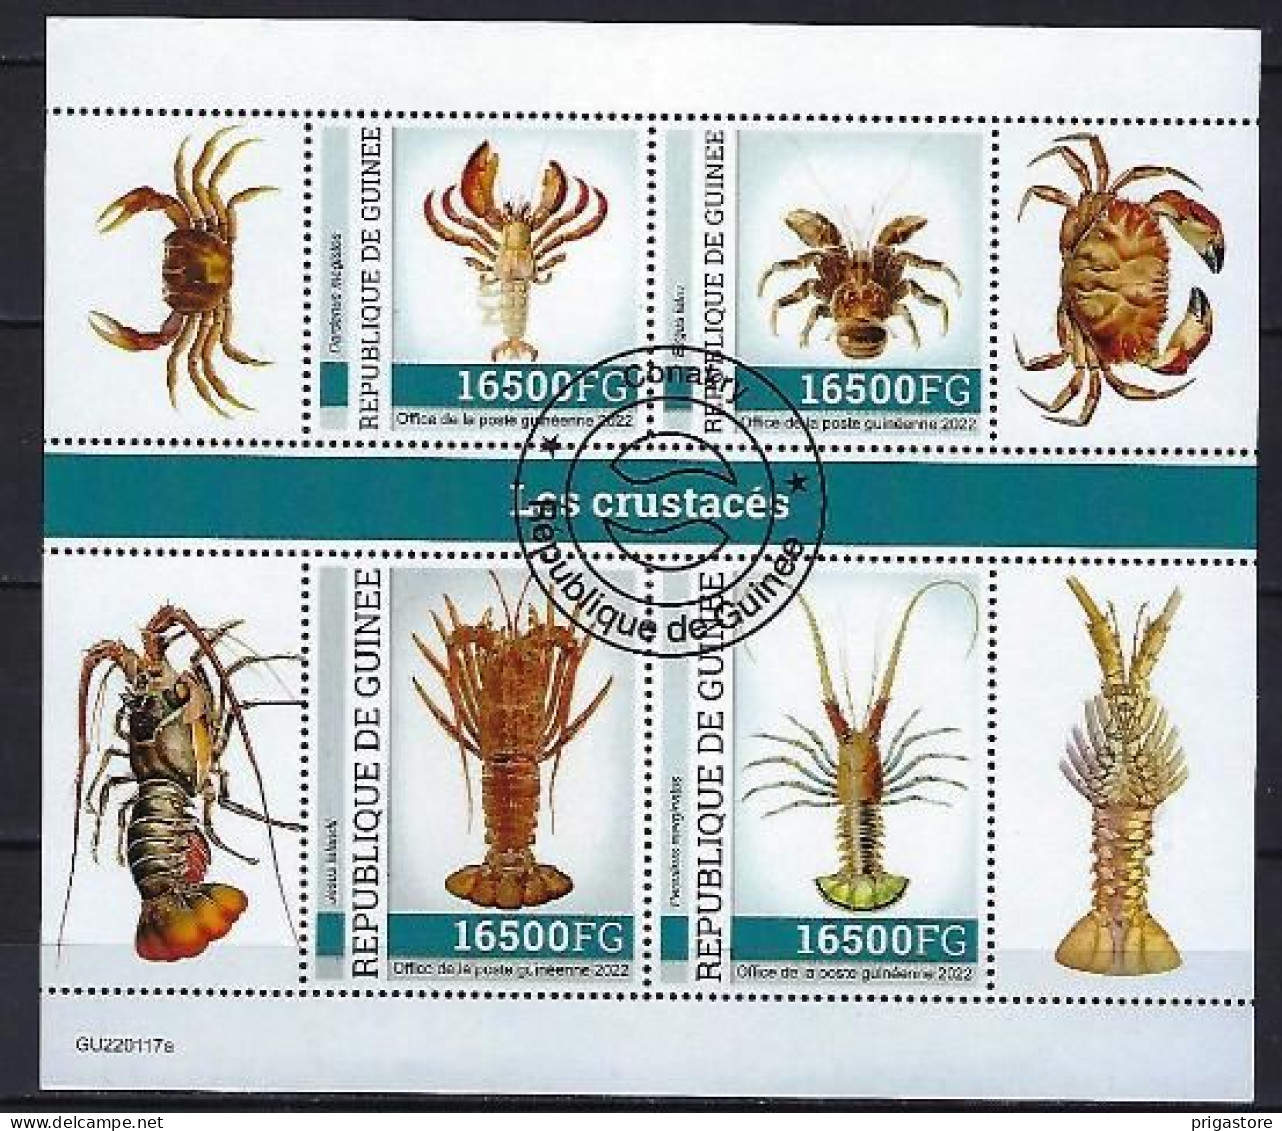 Animaux Crustacés Guinée 2022 (395) Yvert N° 11593 à 11596 Oblitérés Used - Crustáceos